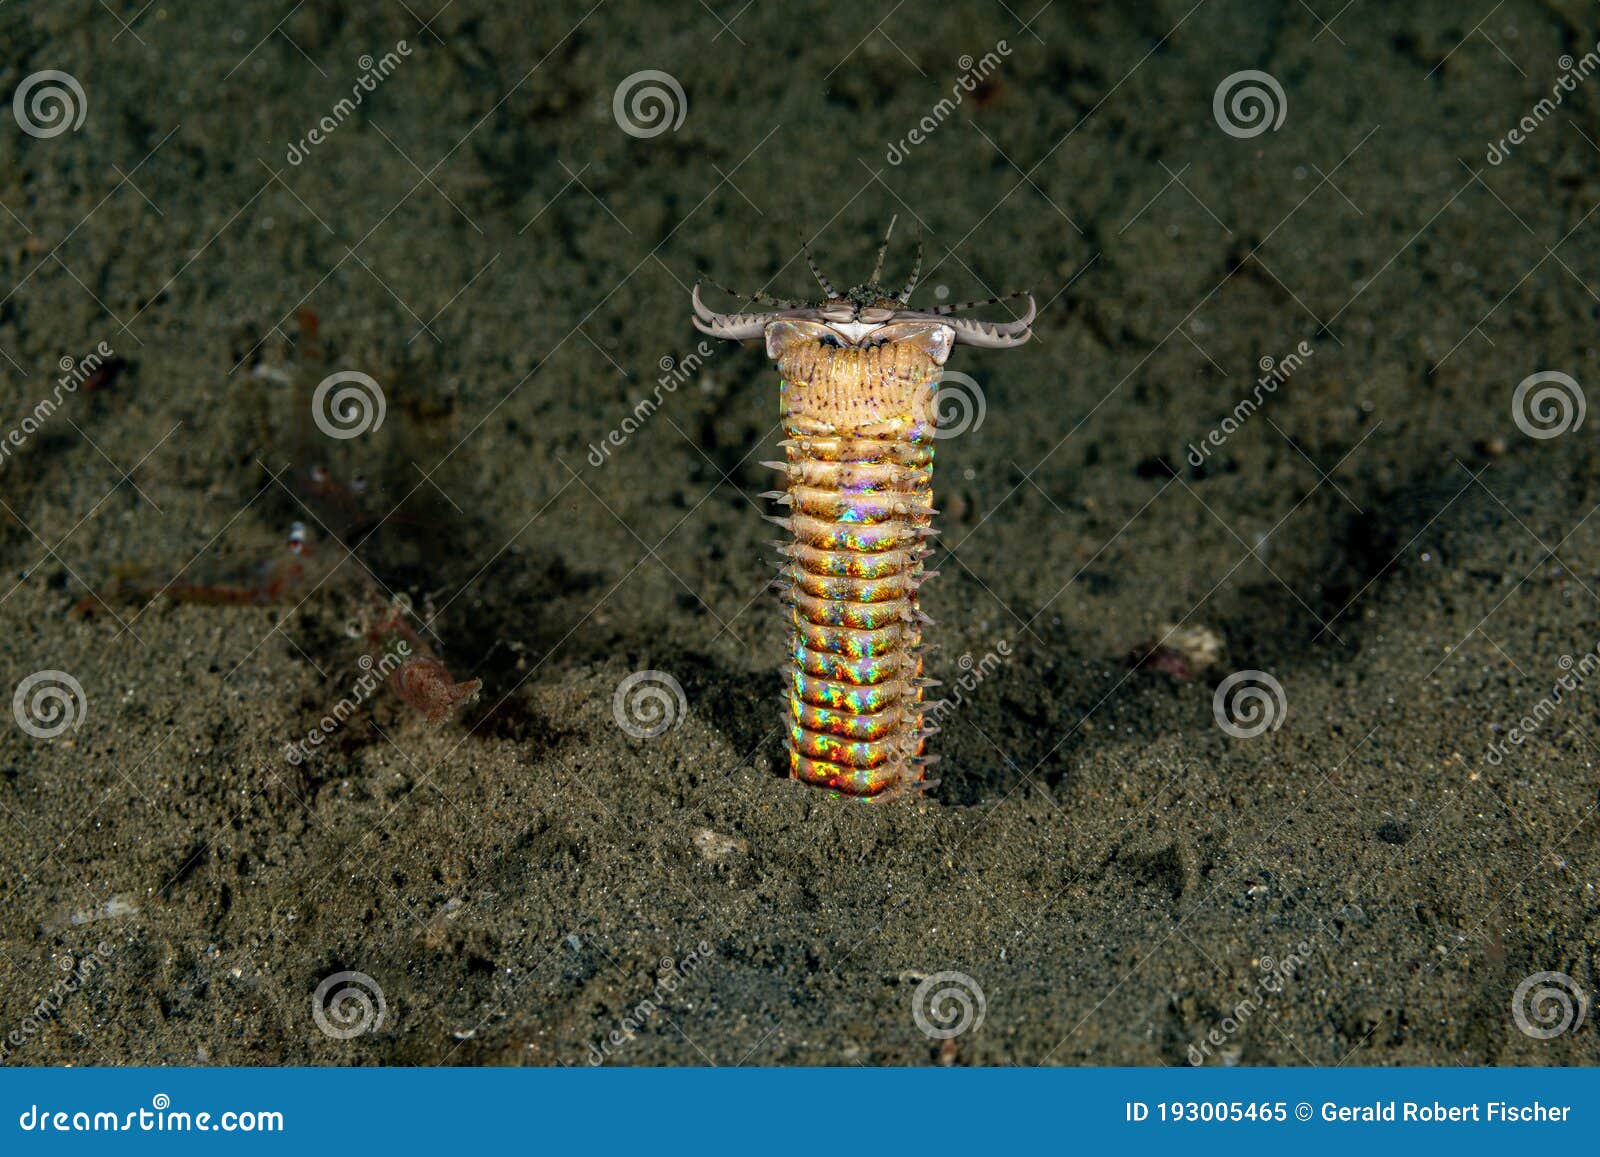 bobbitt worm or sand striker